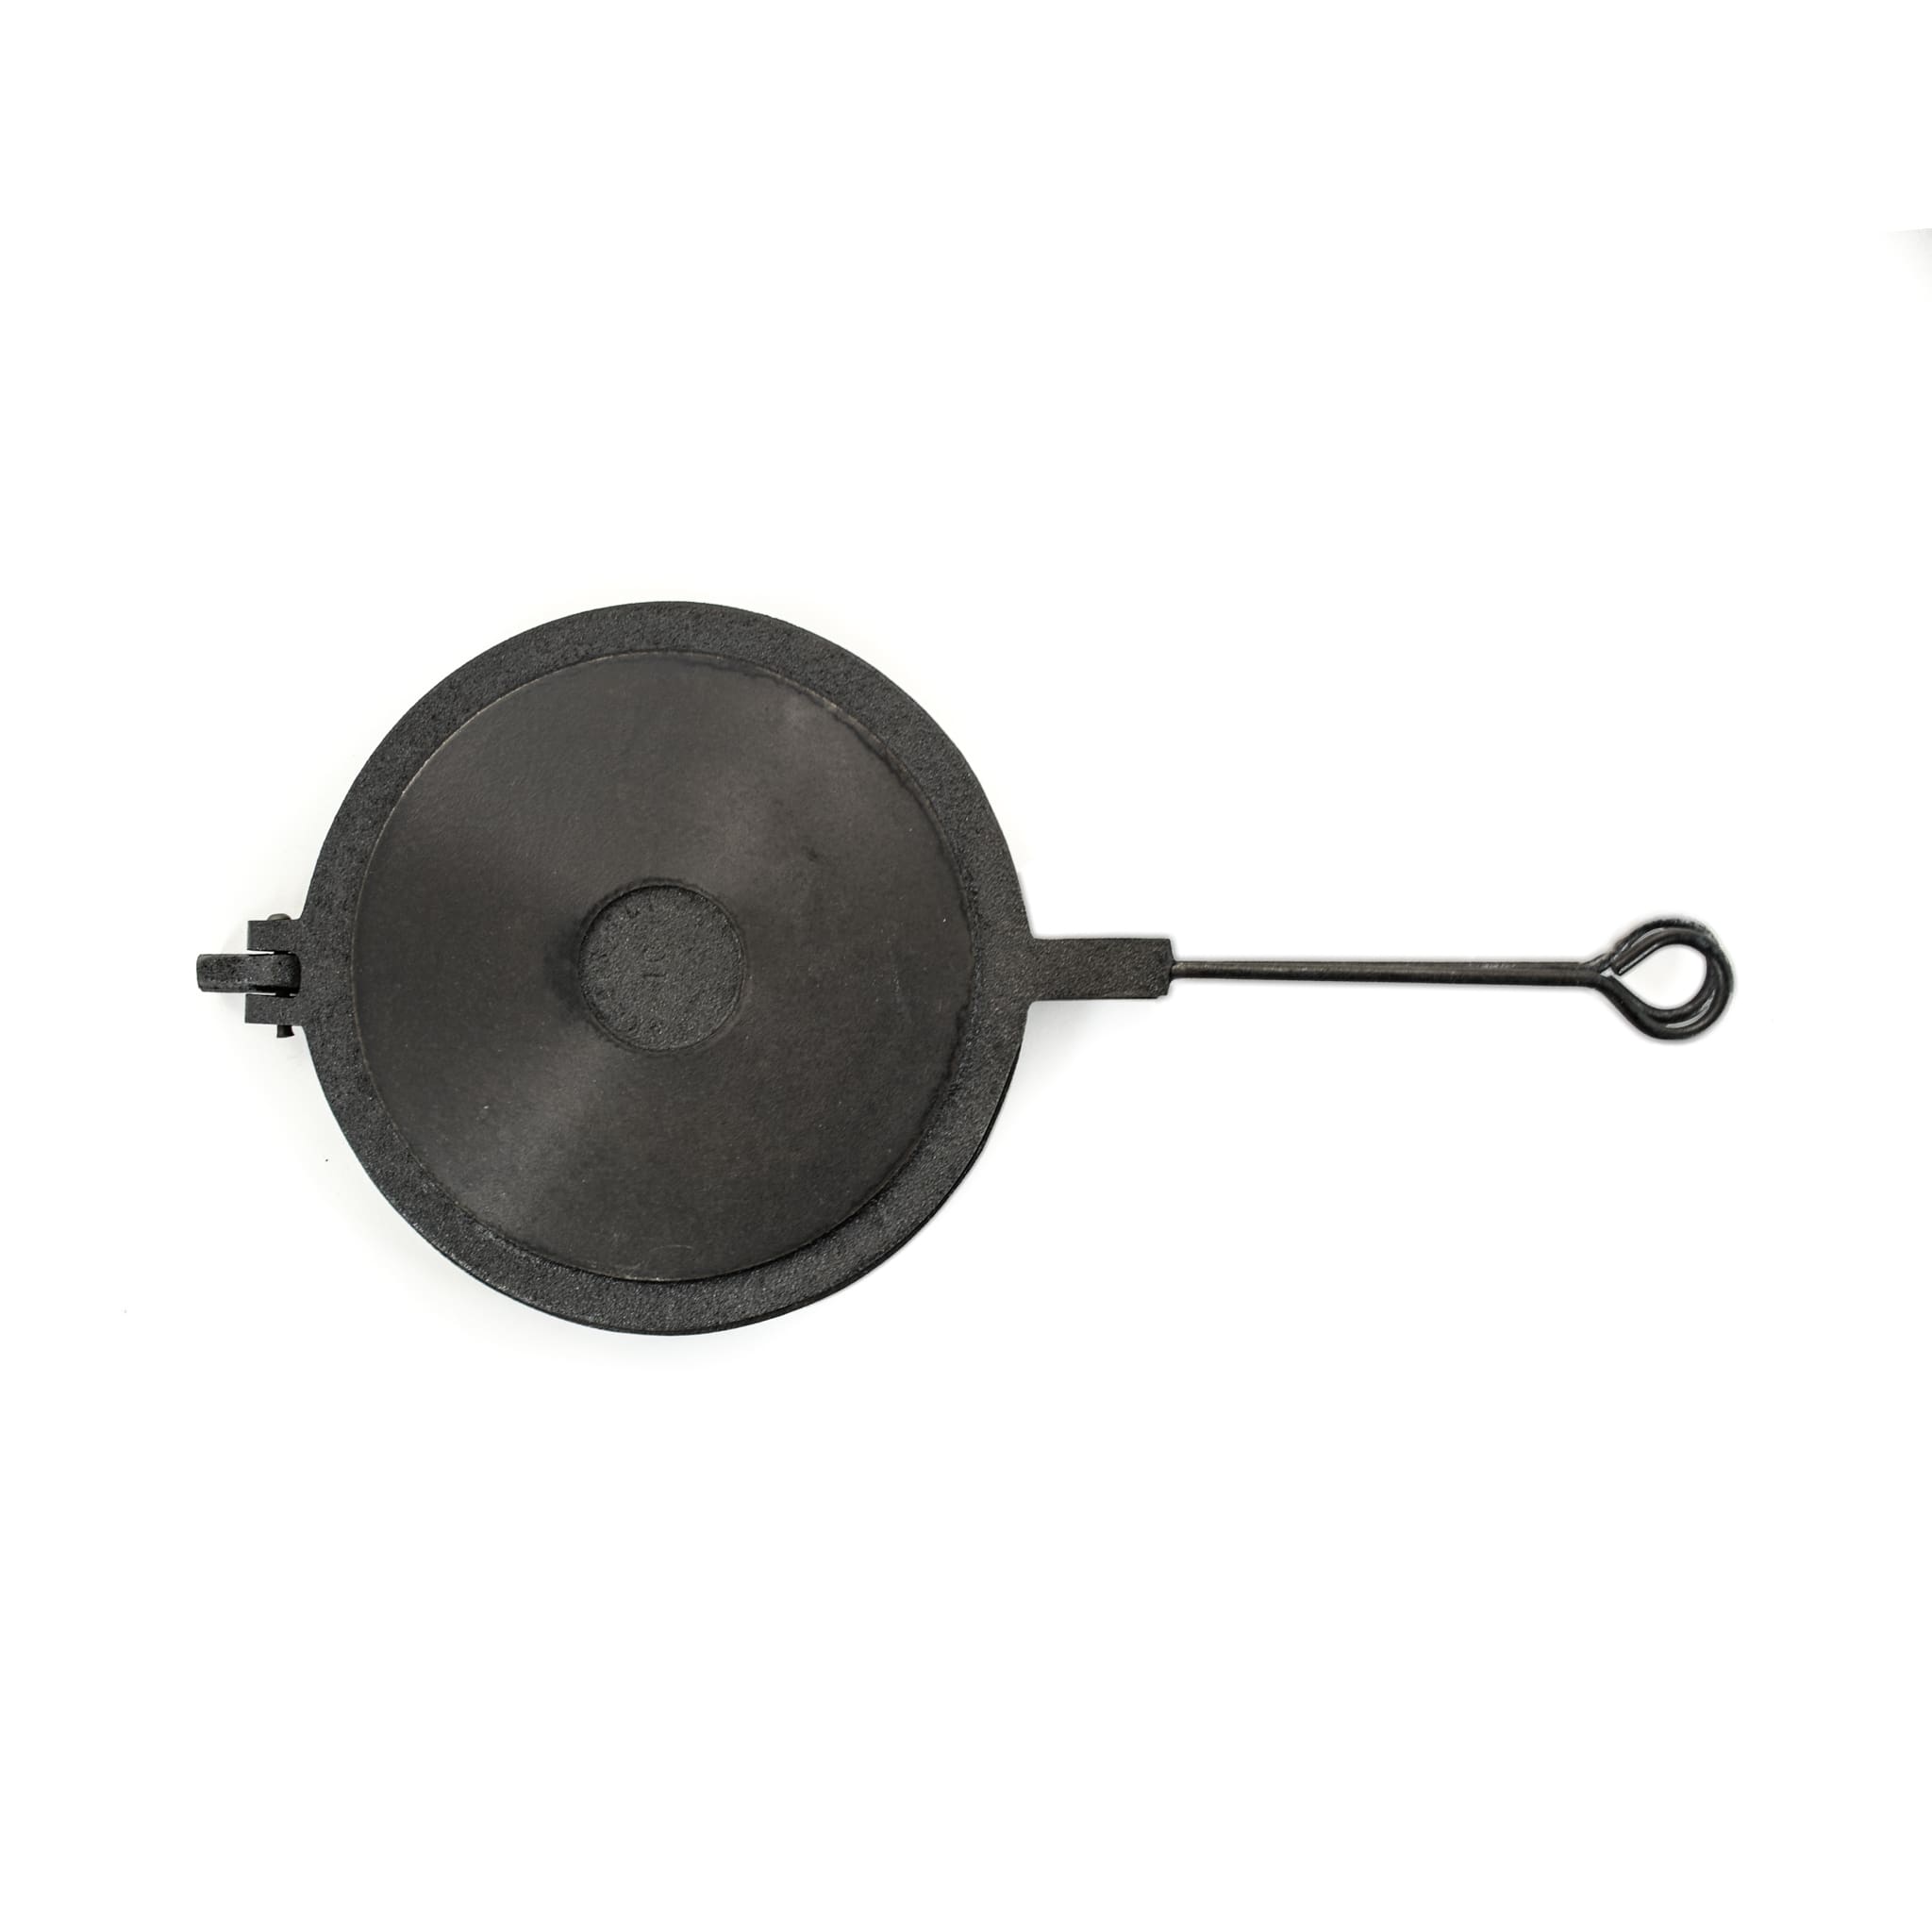 Skeppshult Cast Iron Waffle Iron, 21cm